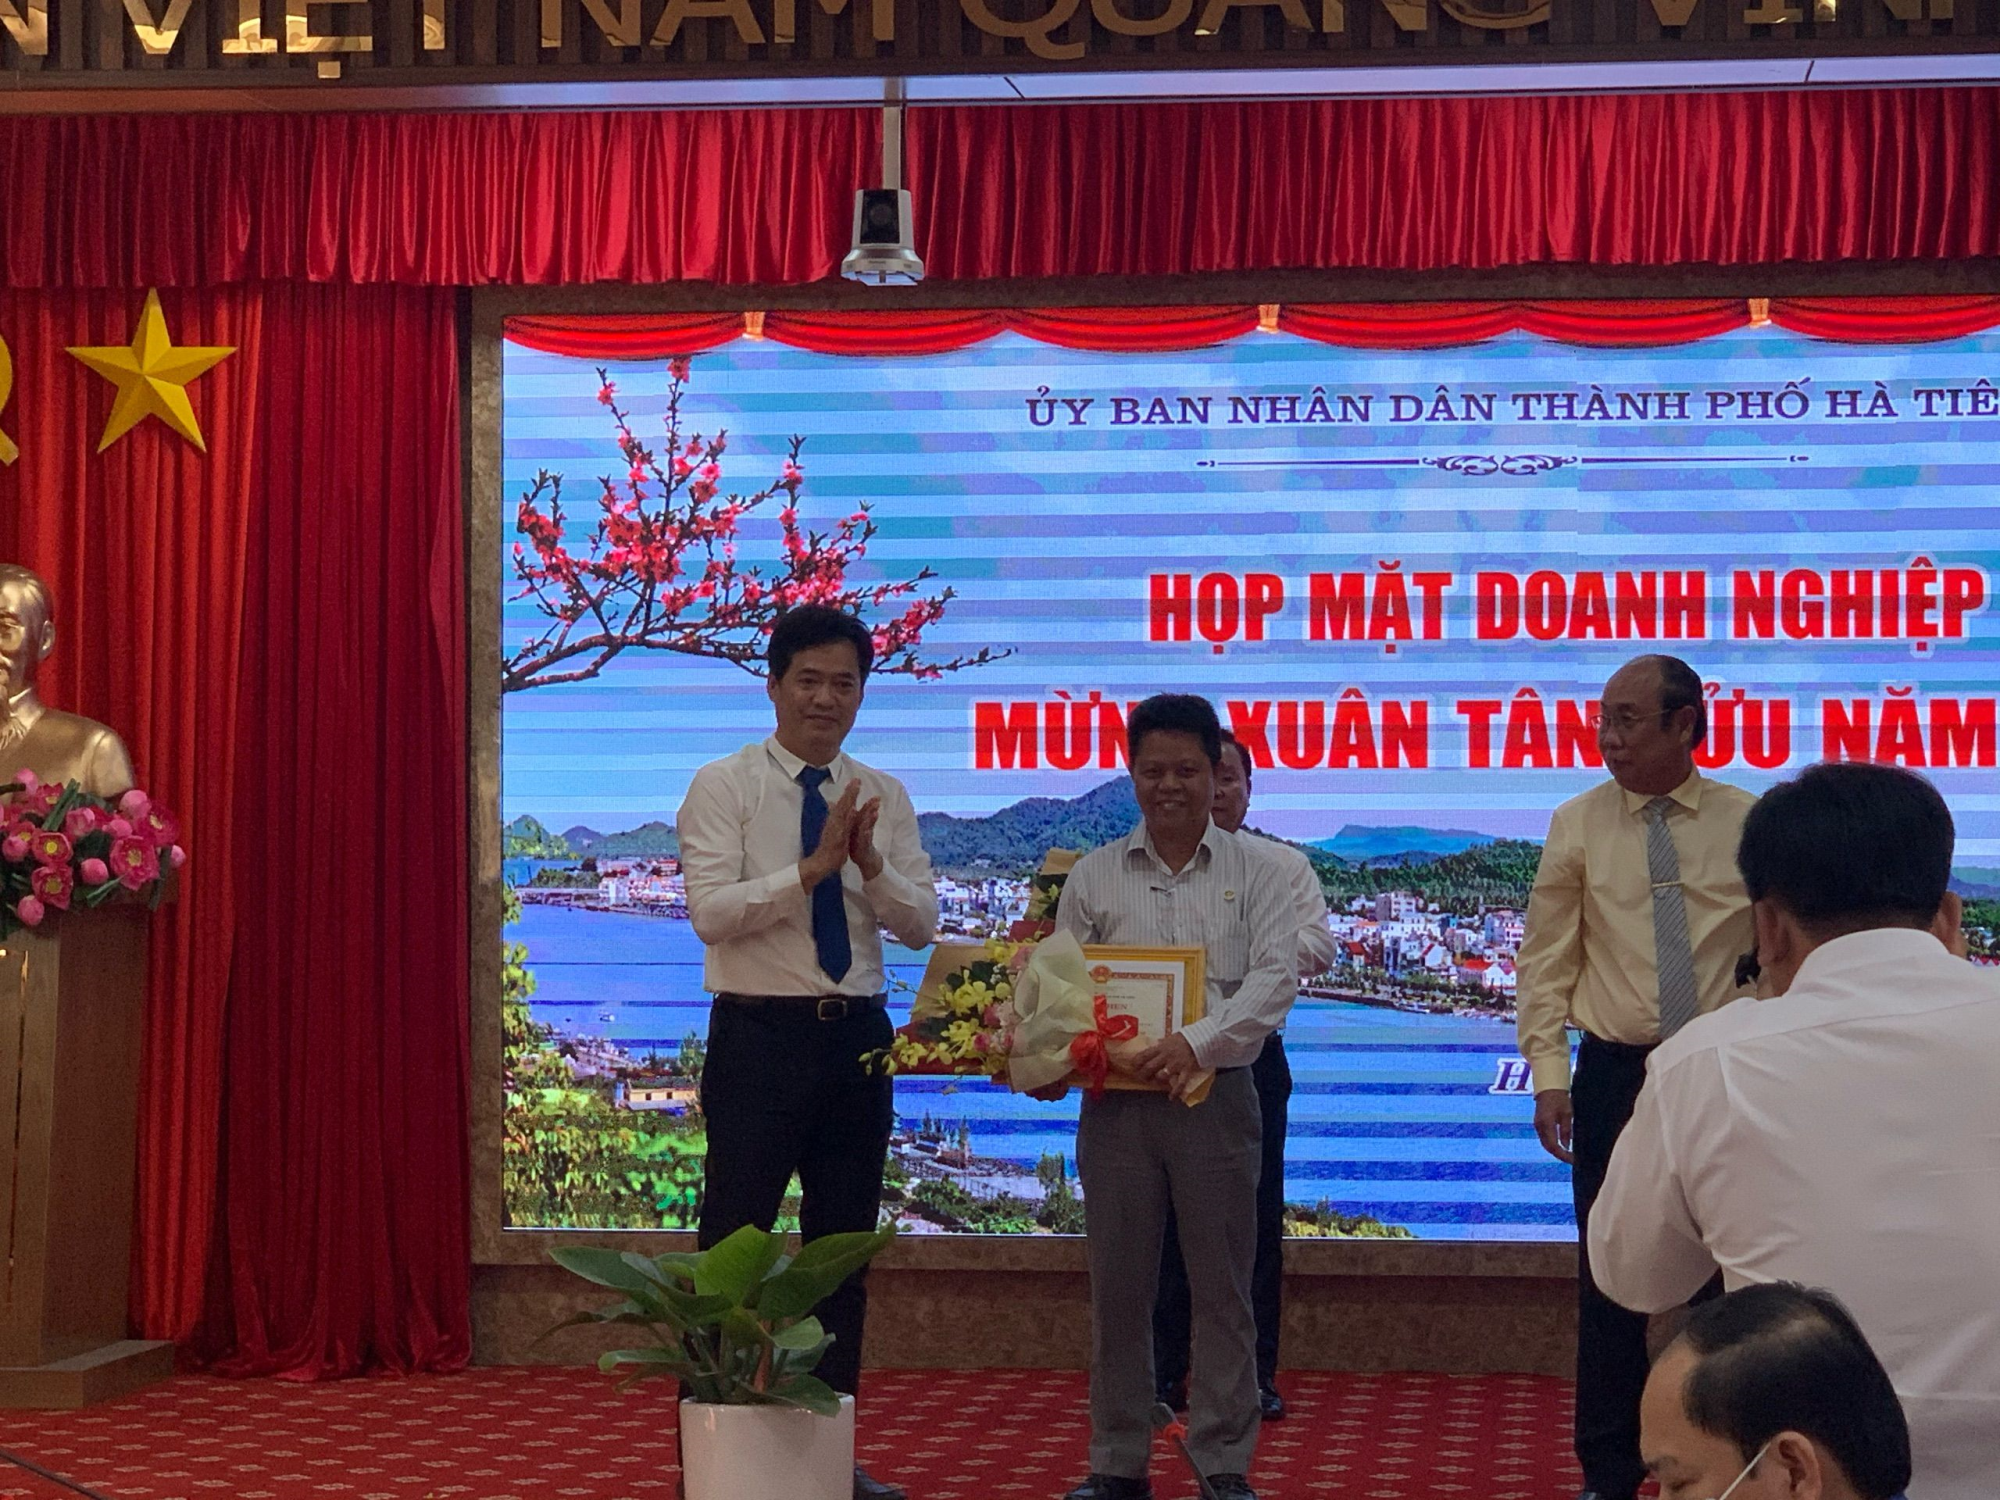 CNT Group vinh dự nhận Giấy Khen của chủ tịch UBND thành phố Hà Tiên